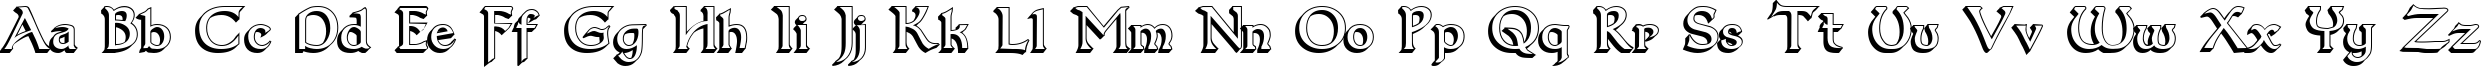 Пример написания английского алфавита шрифтом Dumbledor 3 3D